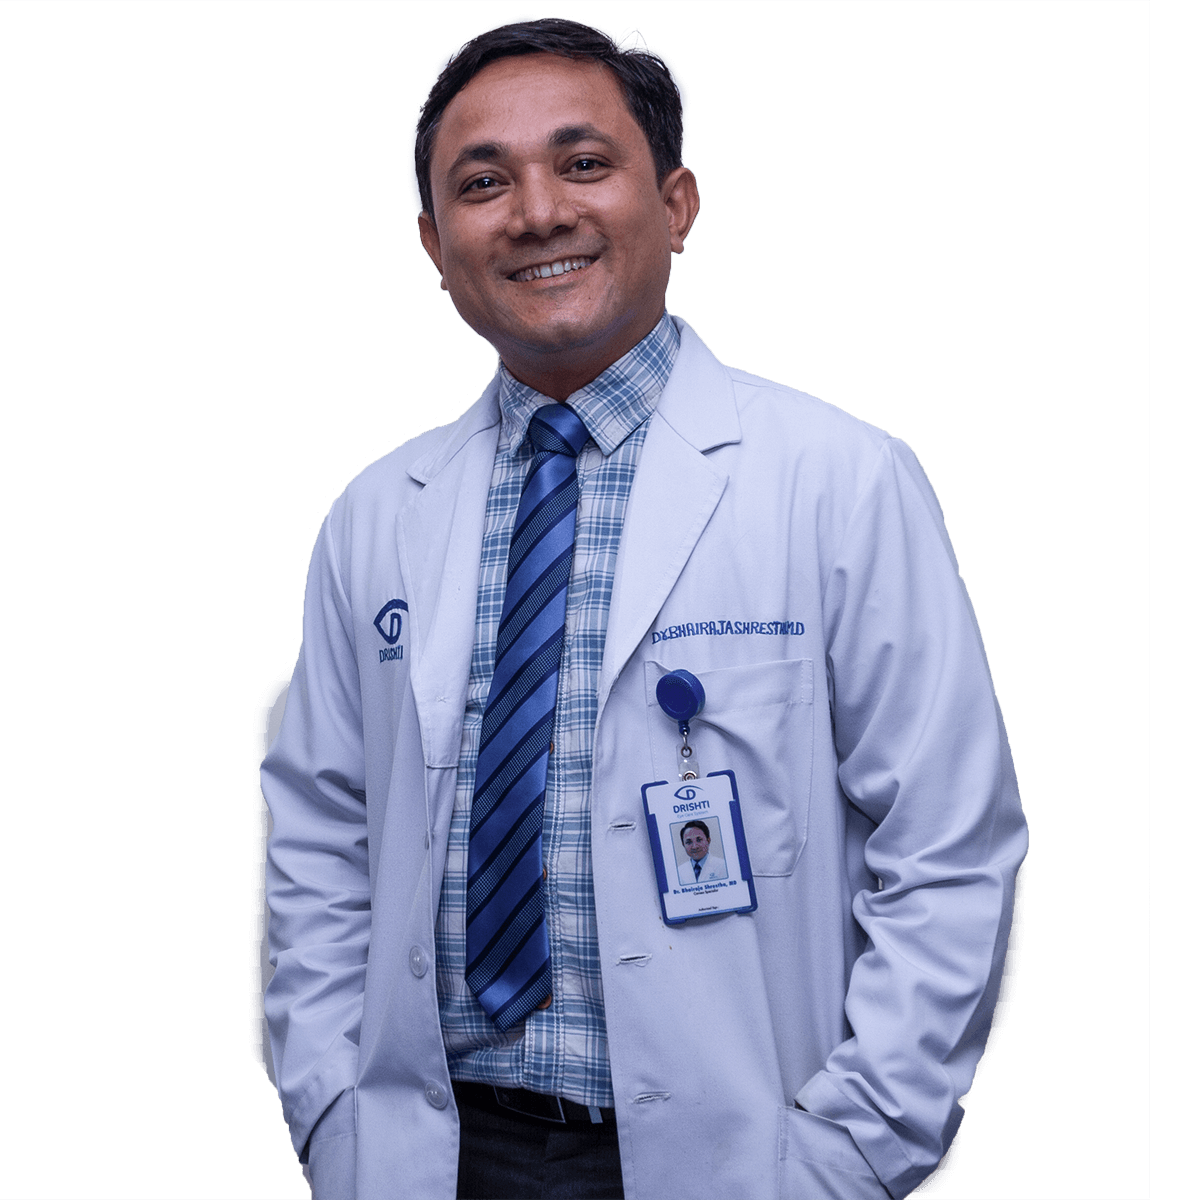 Dr. Bhairaja Shrestha